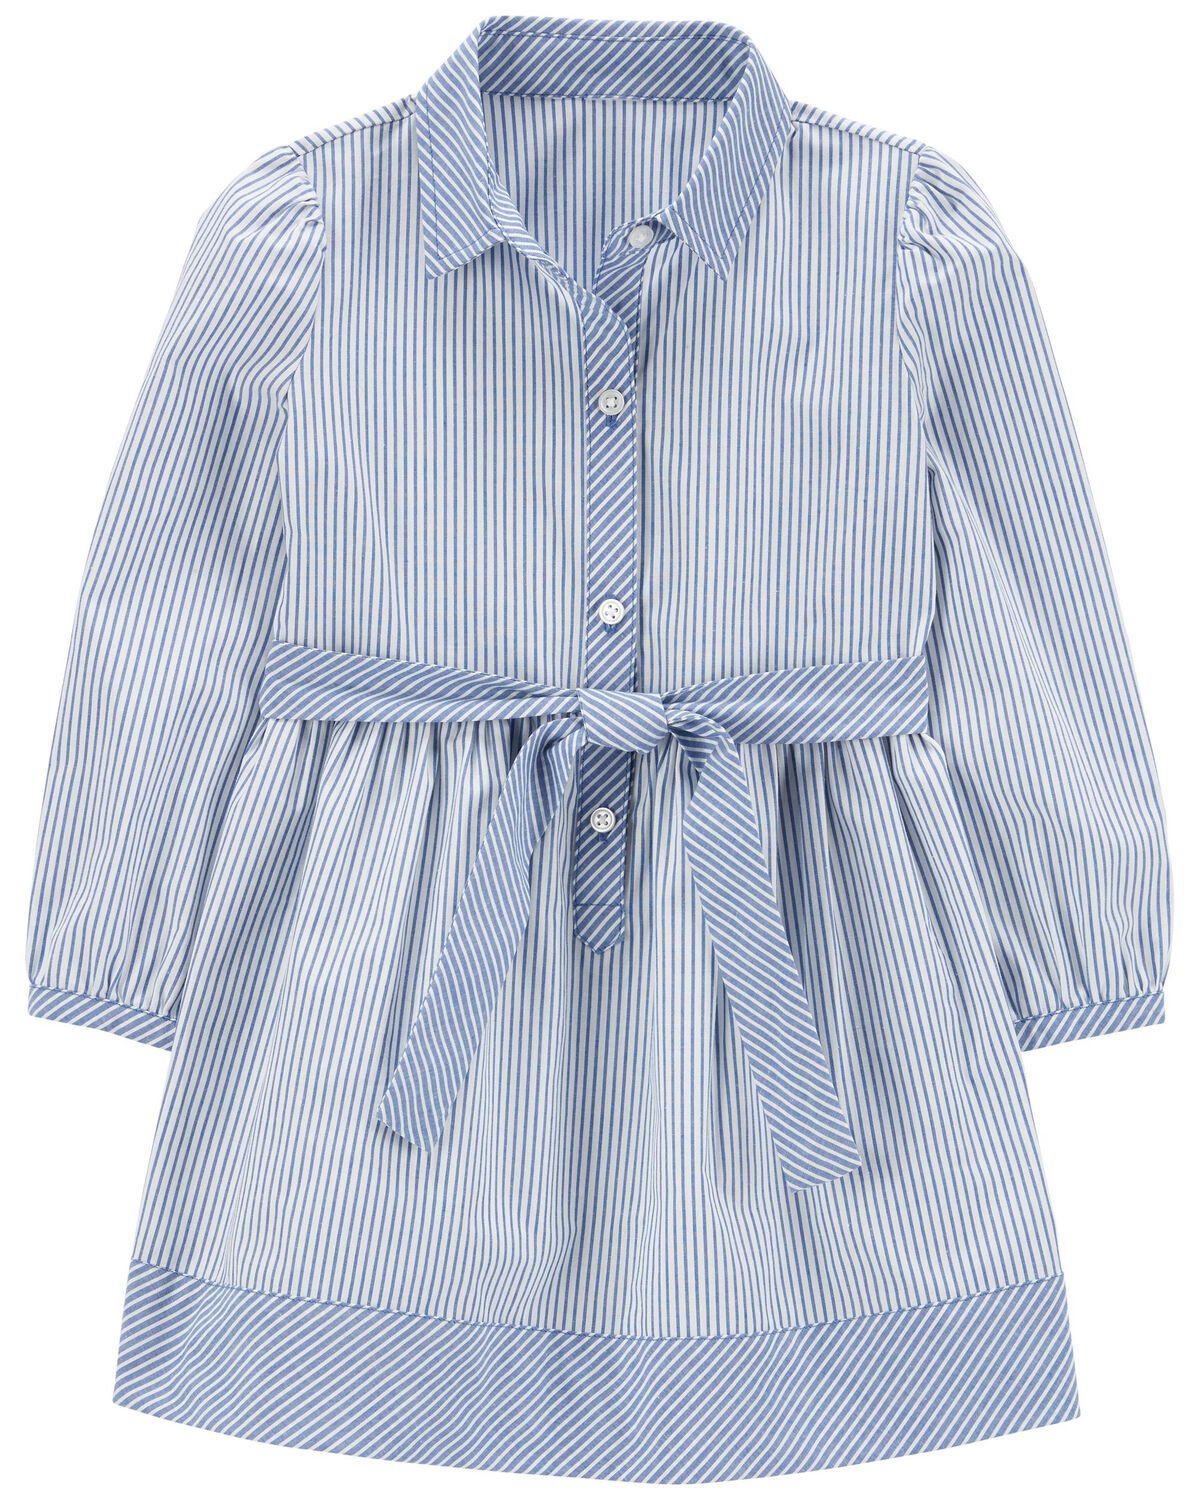 Blue Toddler Striped Shirt Dress | carters.com